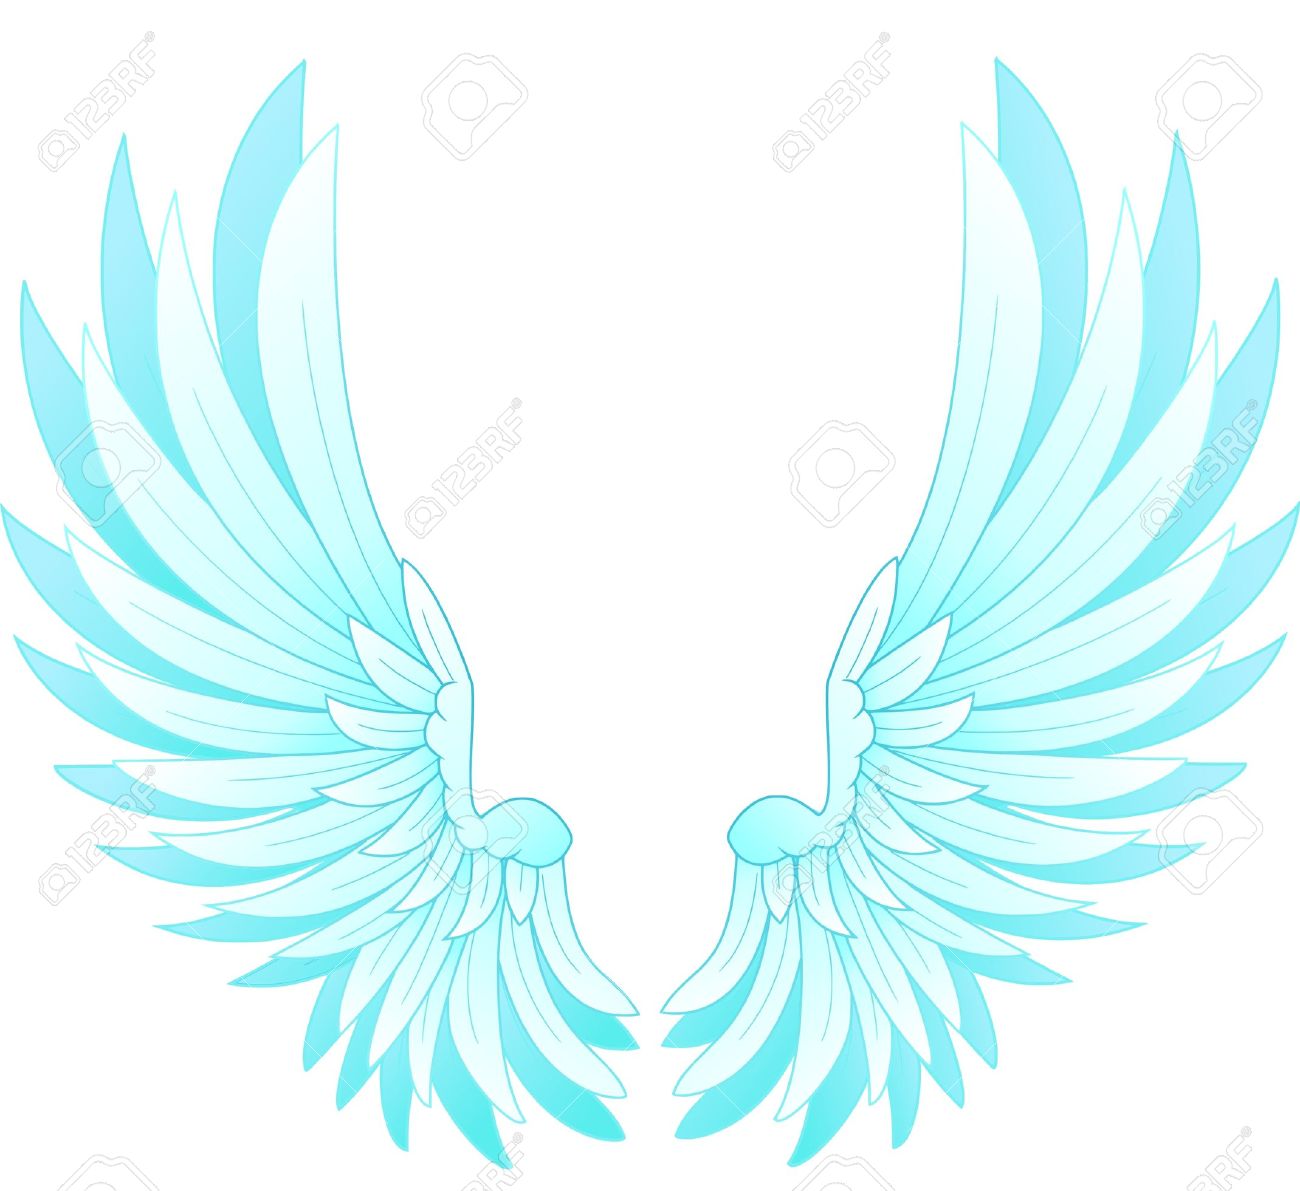 Angel wings free.